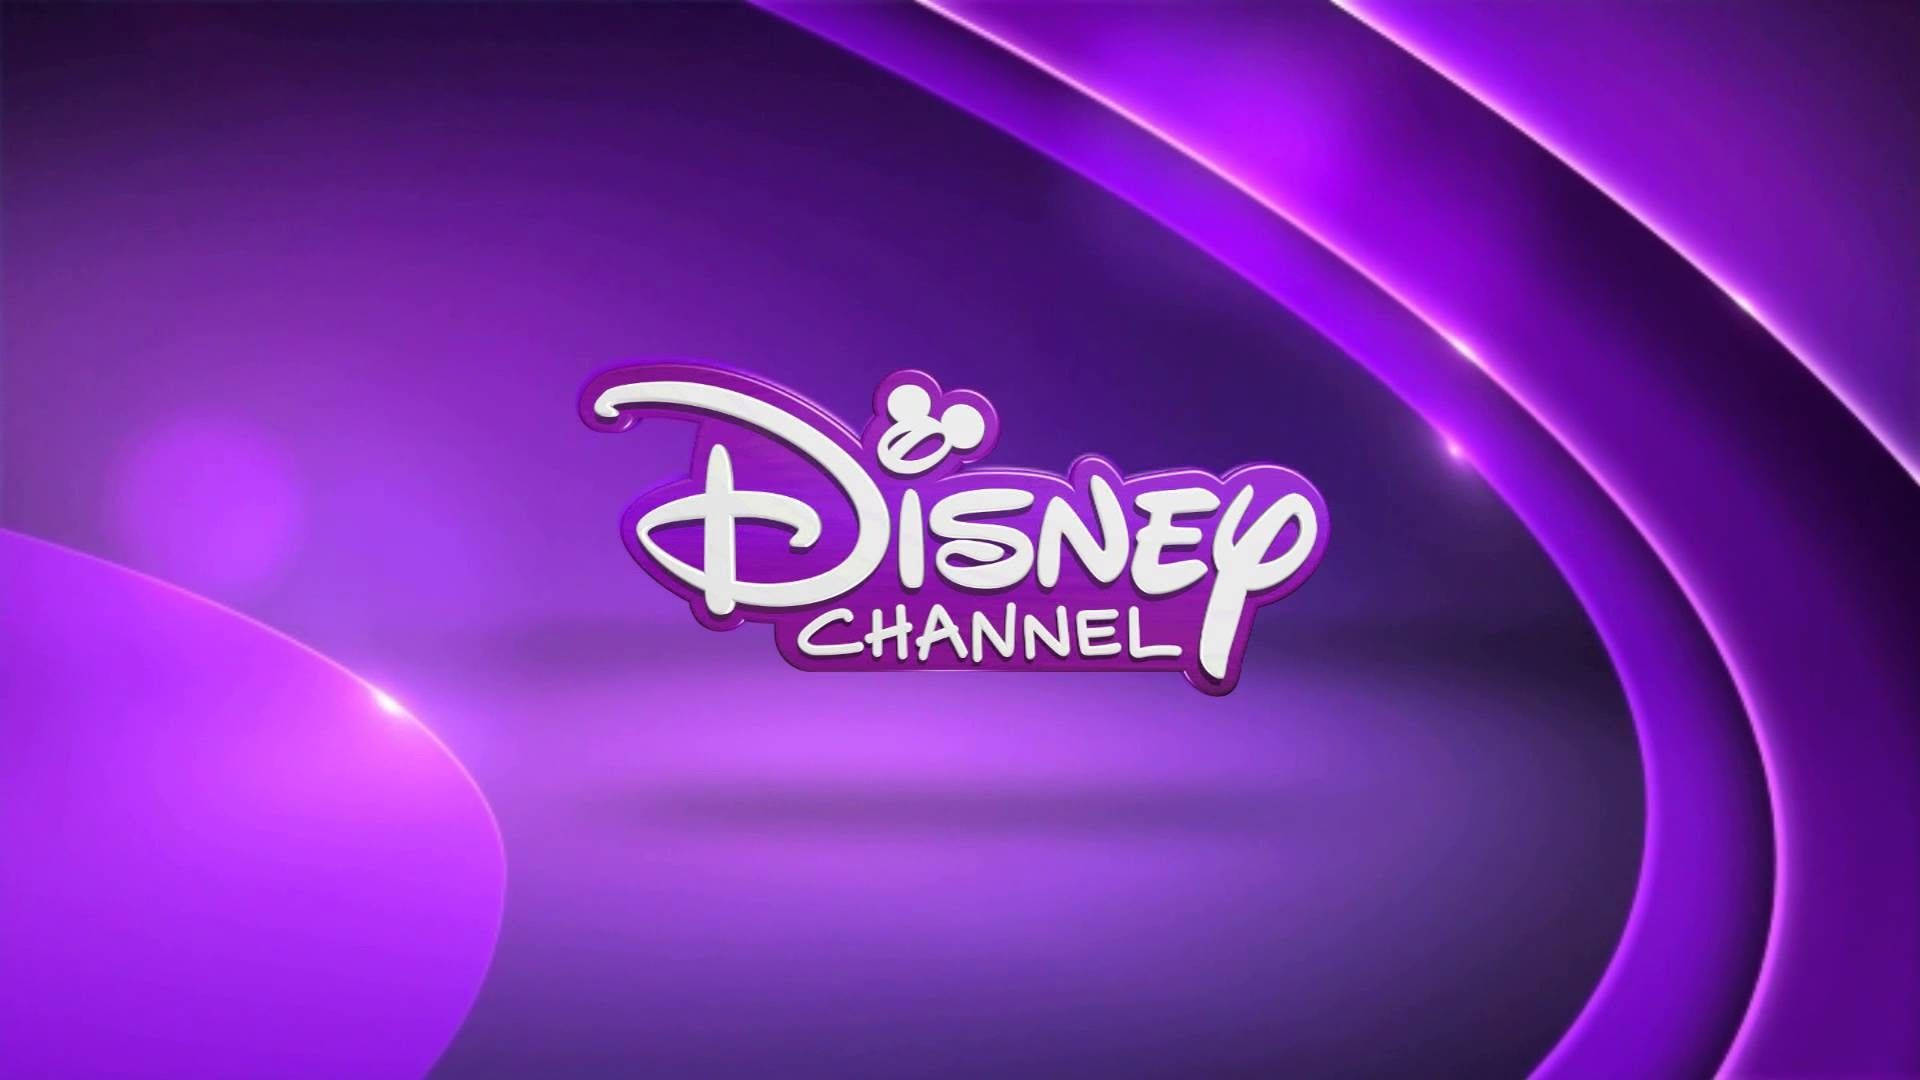 Disney Channel Monochromatic Purple Logo Wallpaper